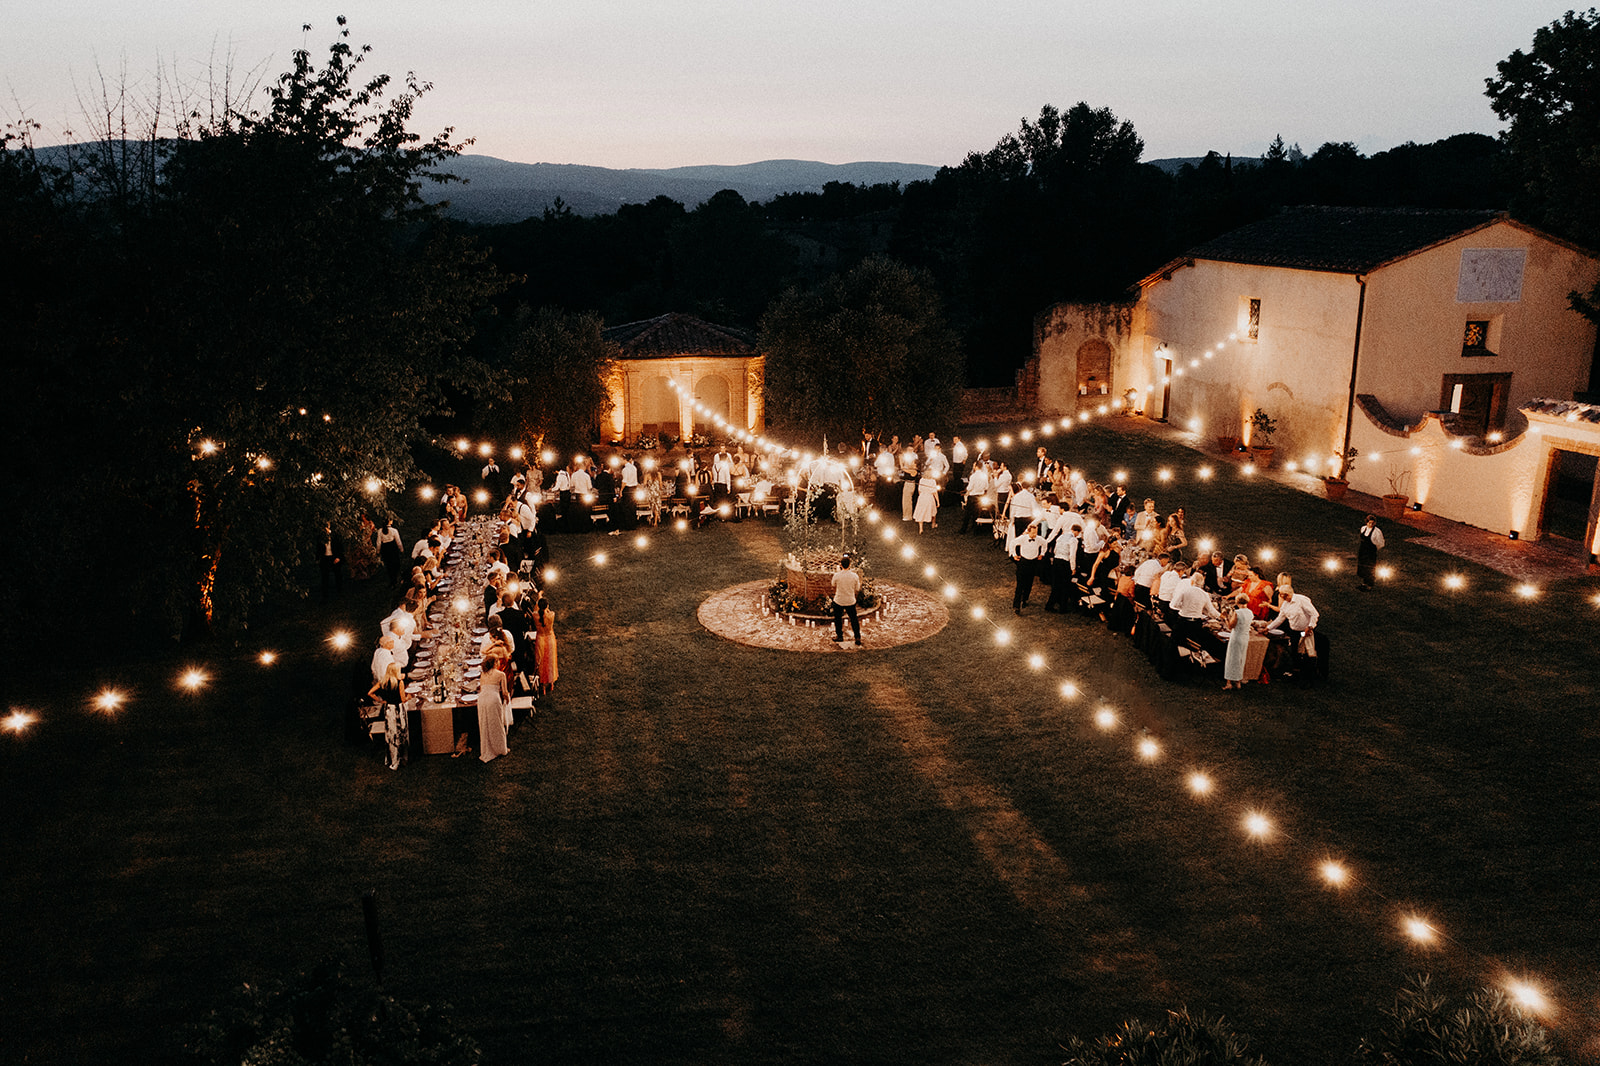 MAR EMLU LATW3 23 websize - Les plus beaux lieux de mariage en Toscane, Italie